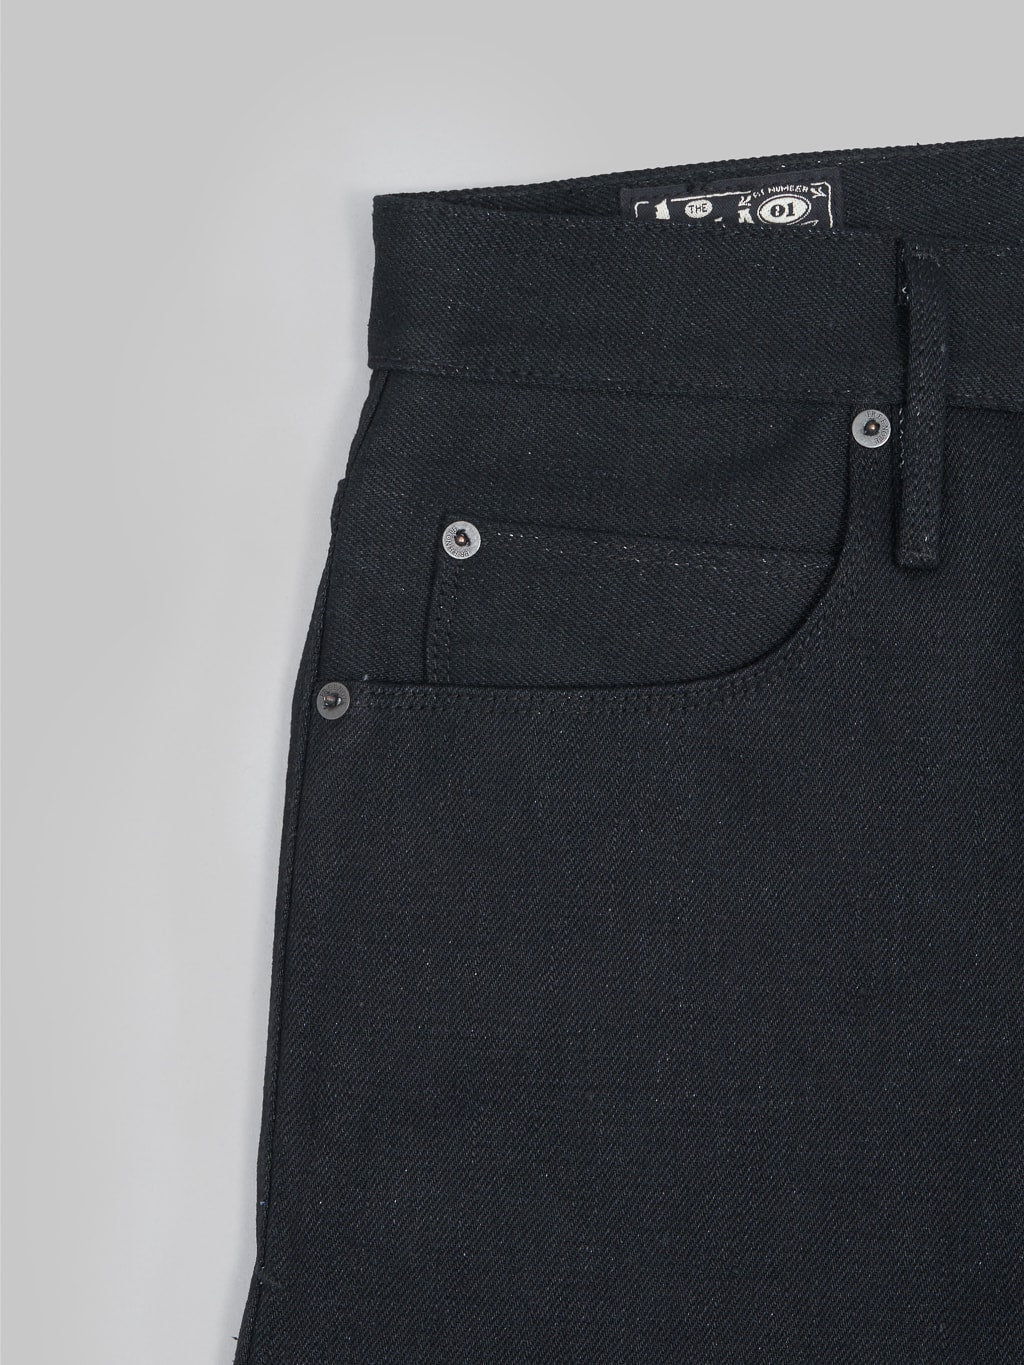 Freenote Cloth Avila 17oz Black Denim Slim Taper Jeans coin pocket